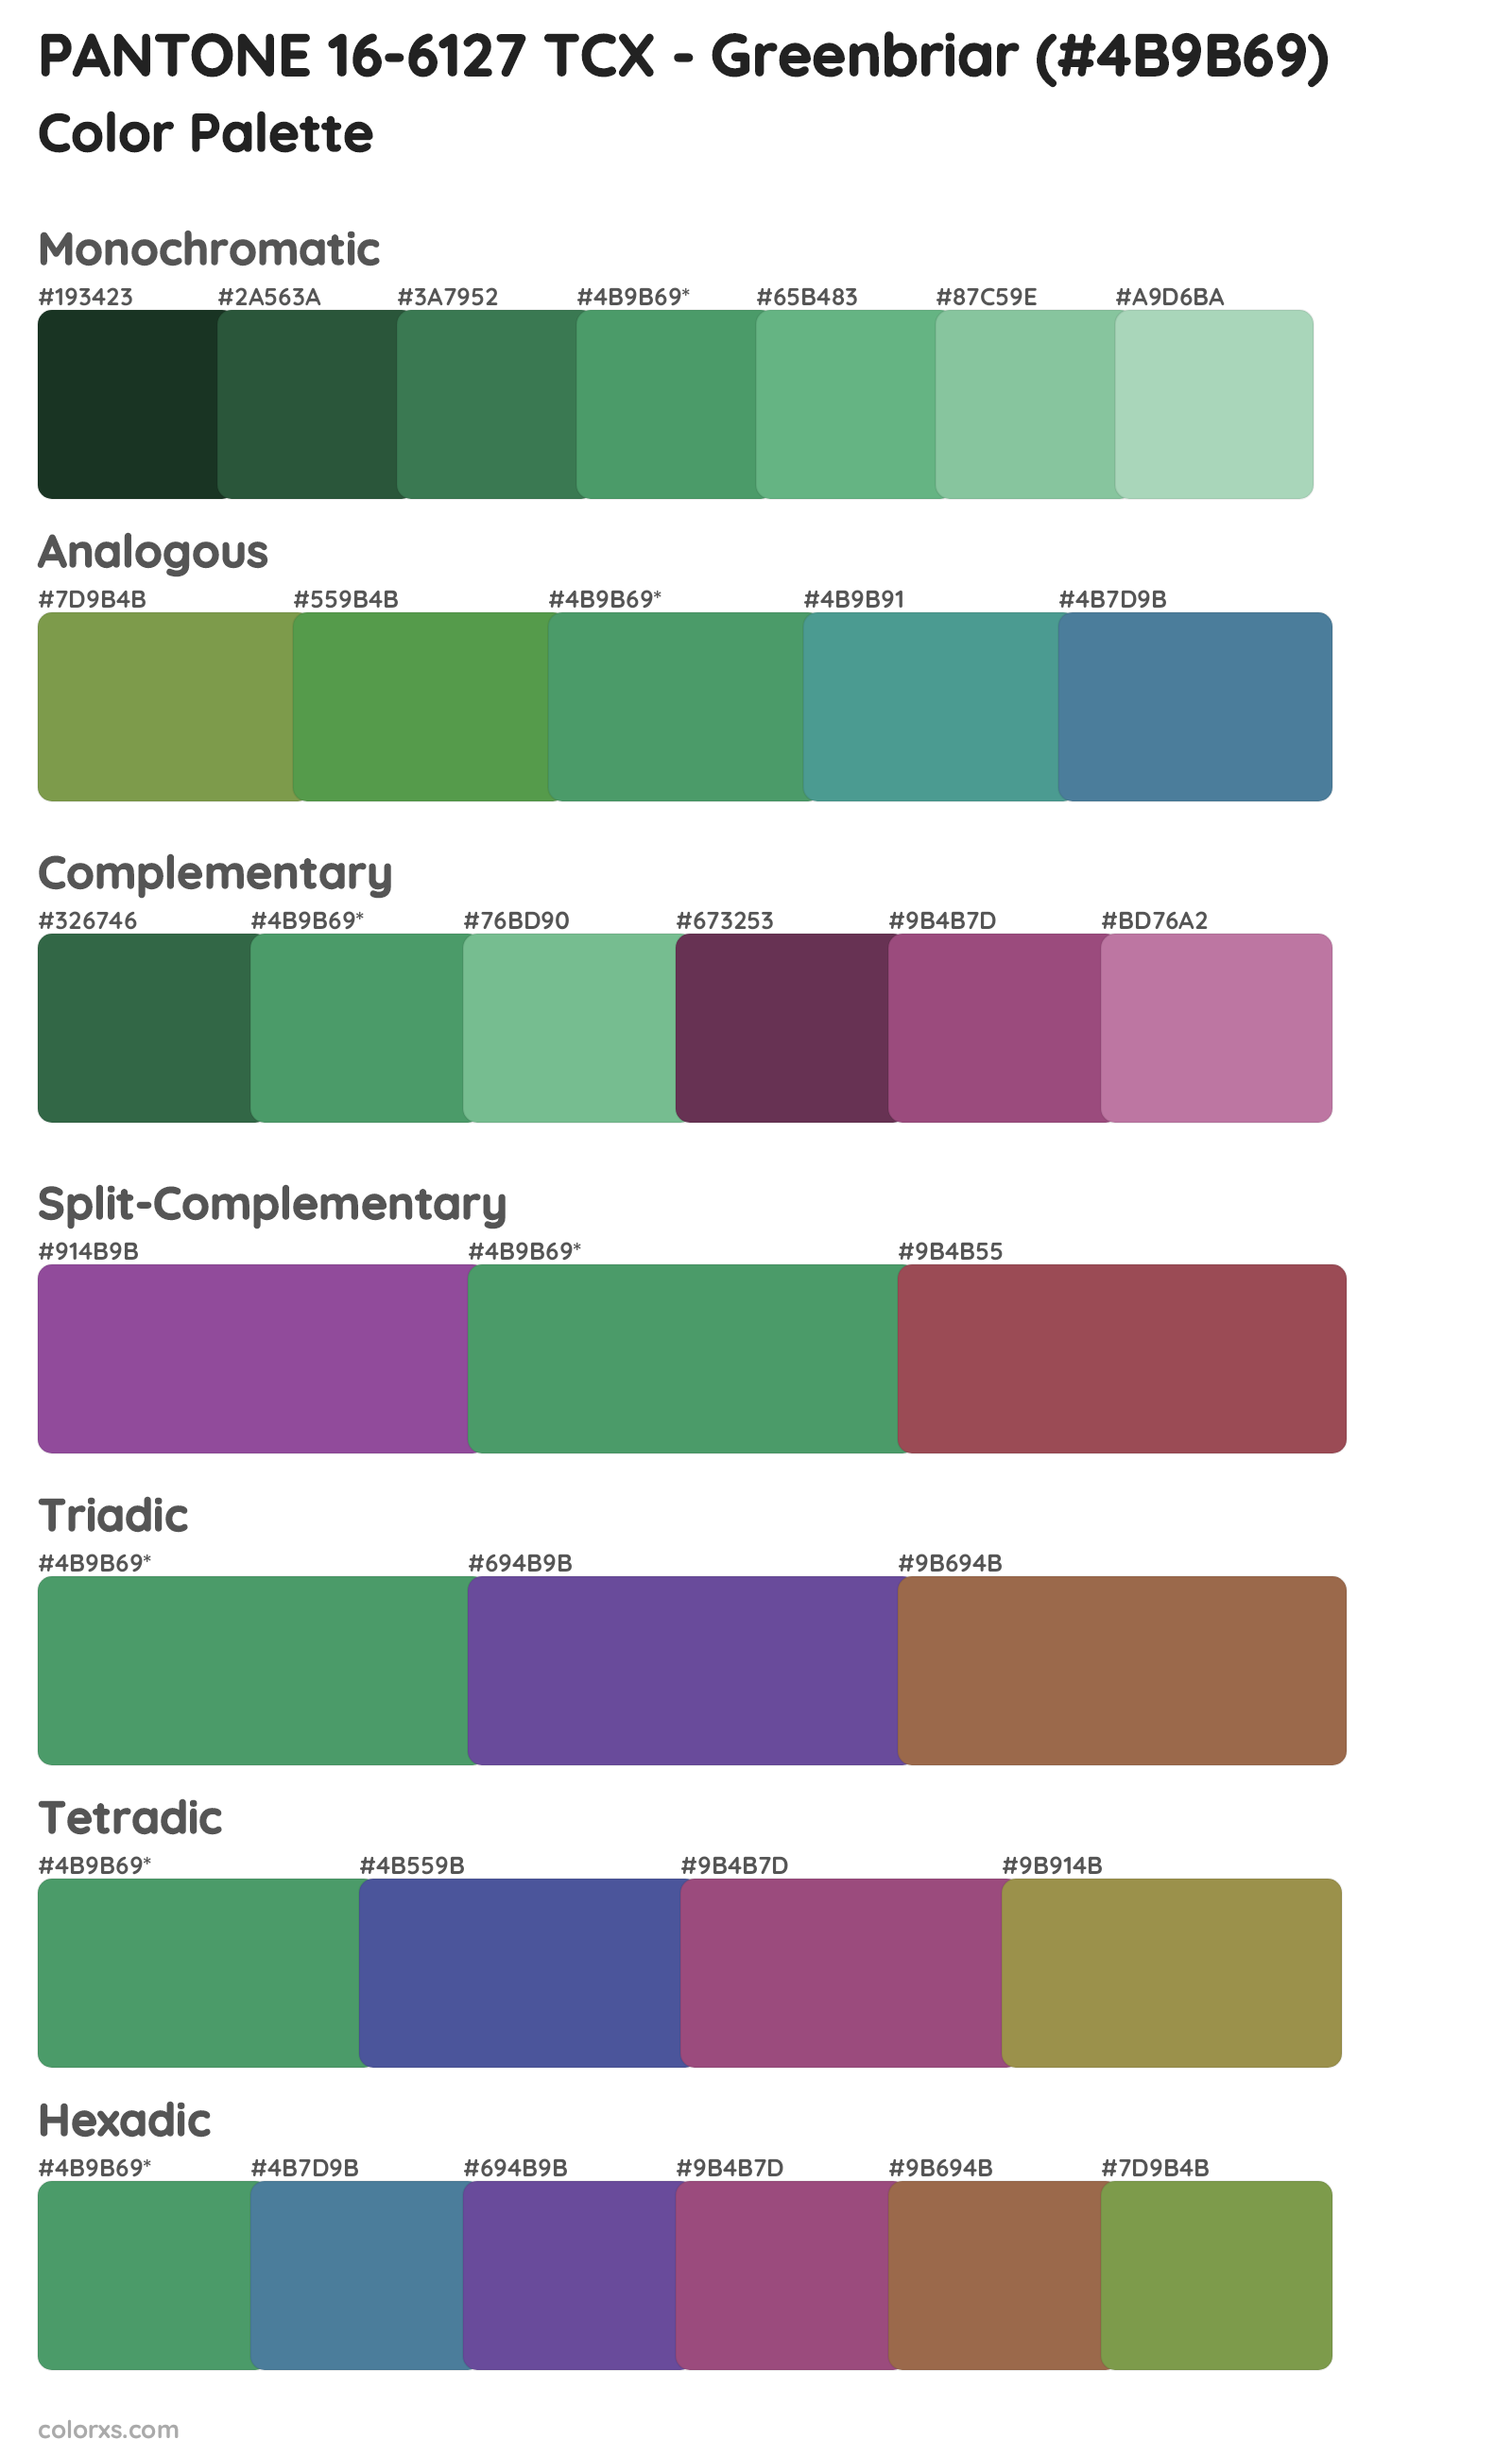 PANTONE 16-6127 TCX - Greenbriar Color Scheme Palettes